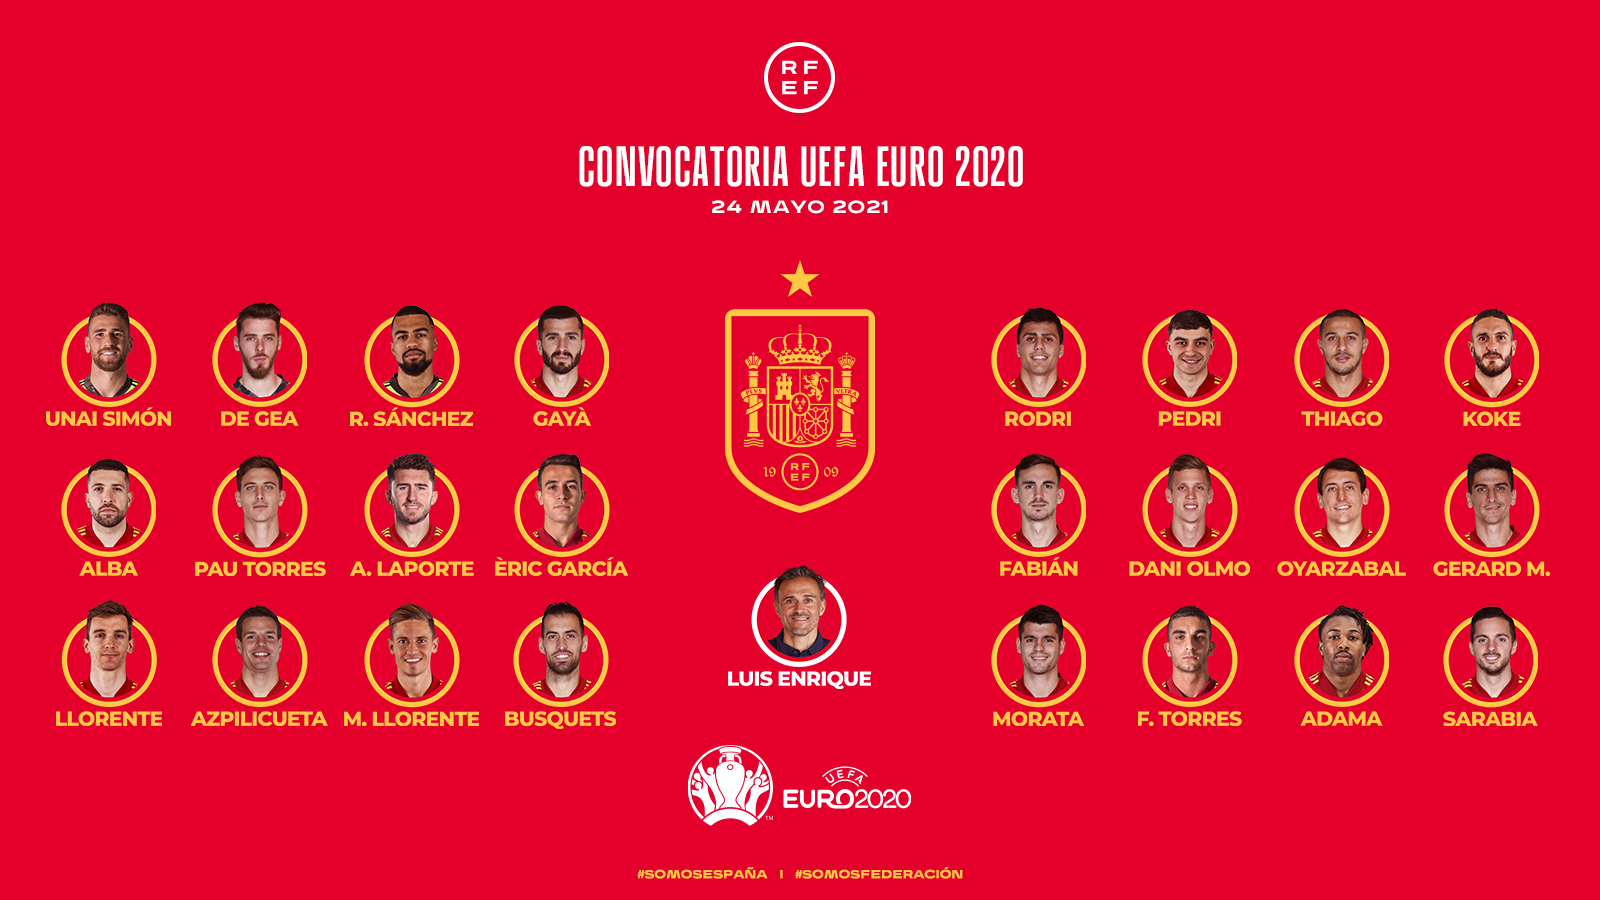 EURO 2021: Lịch thi đấu ĐT Tây Ban Nha, lịch phát sóng trực tiếp VCK EURO trên VTV mới nhất hôm nay